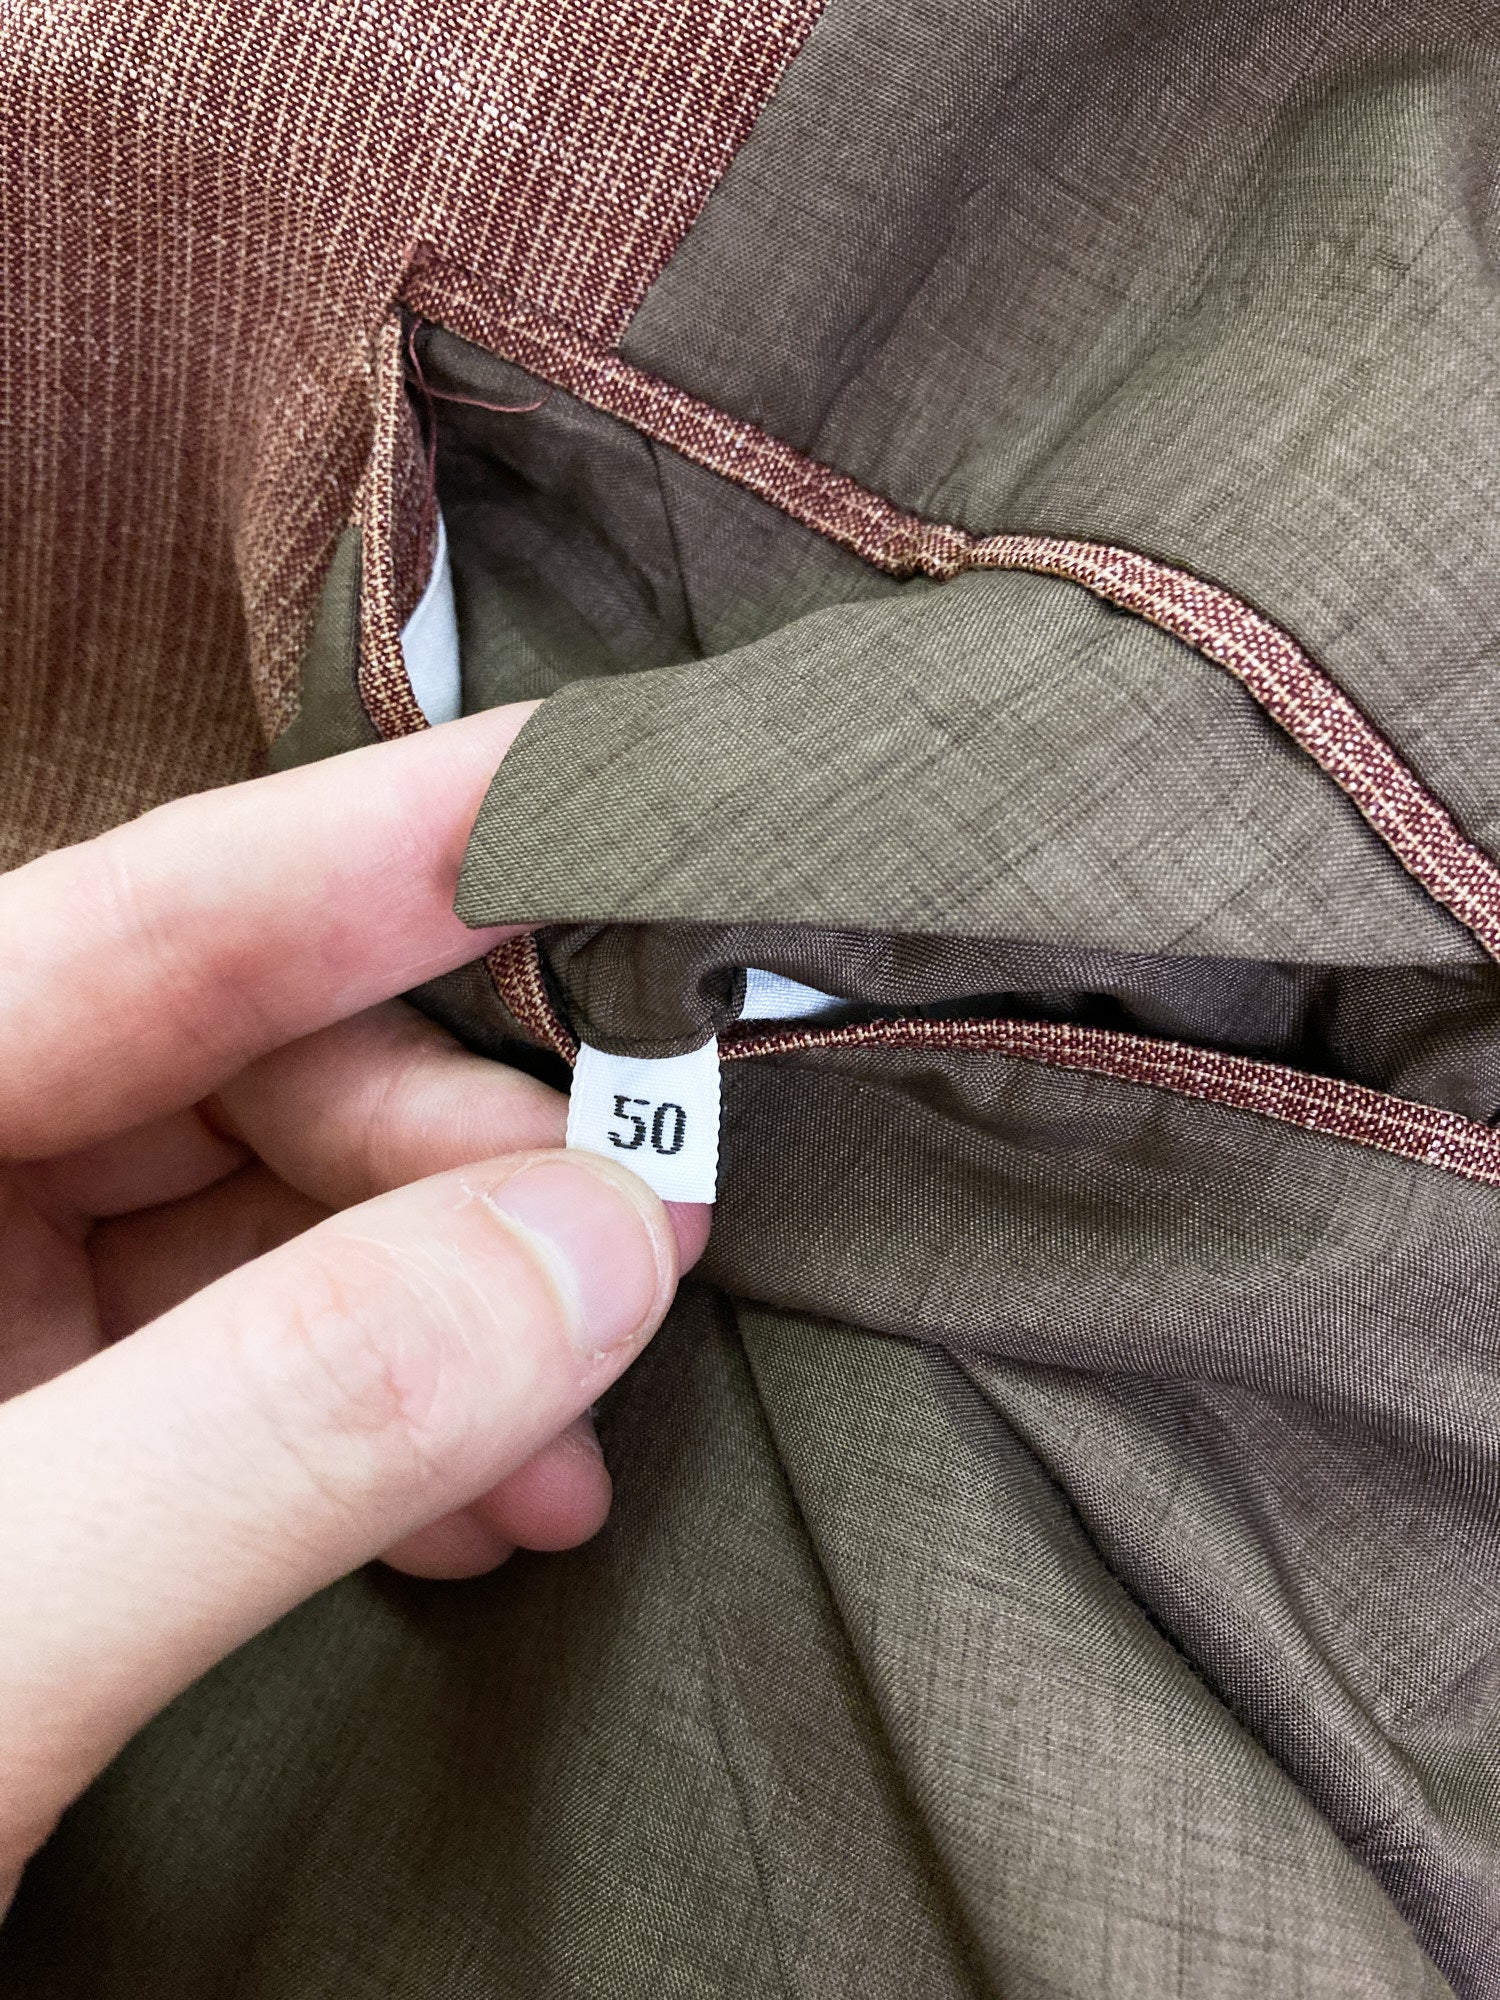 Valentino Jeans brown wool-linen check three button blazer - size 50